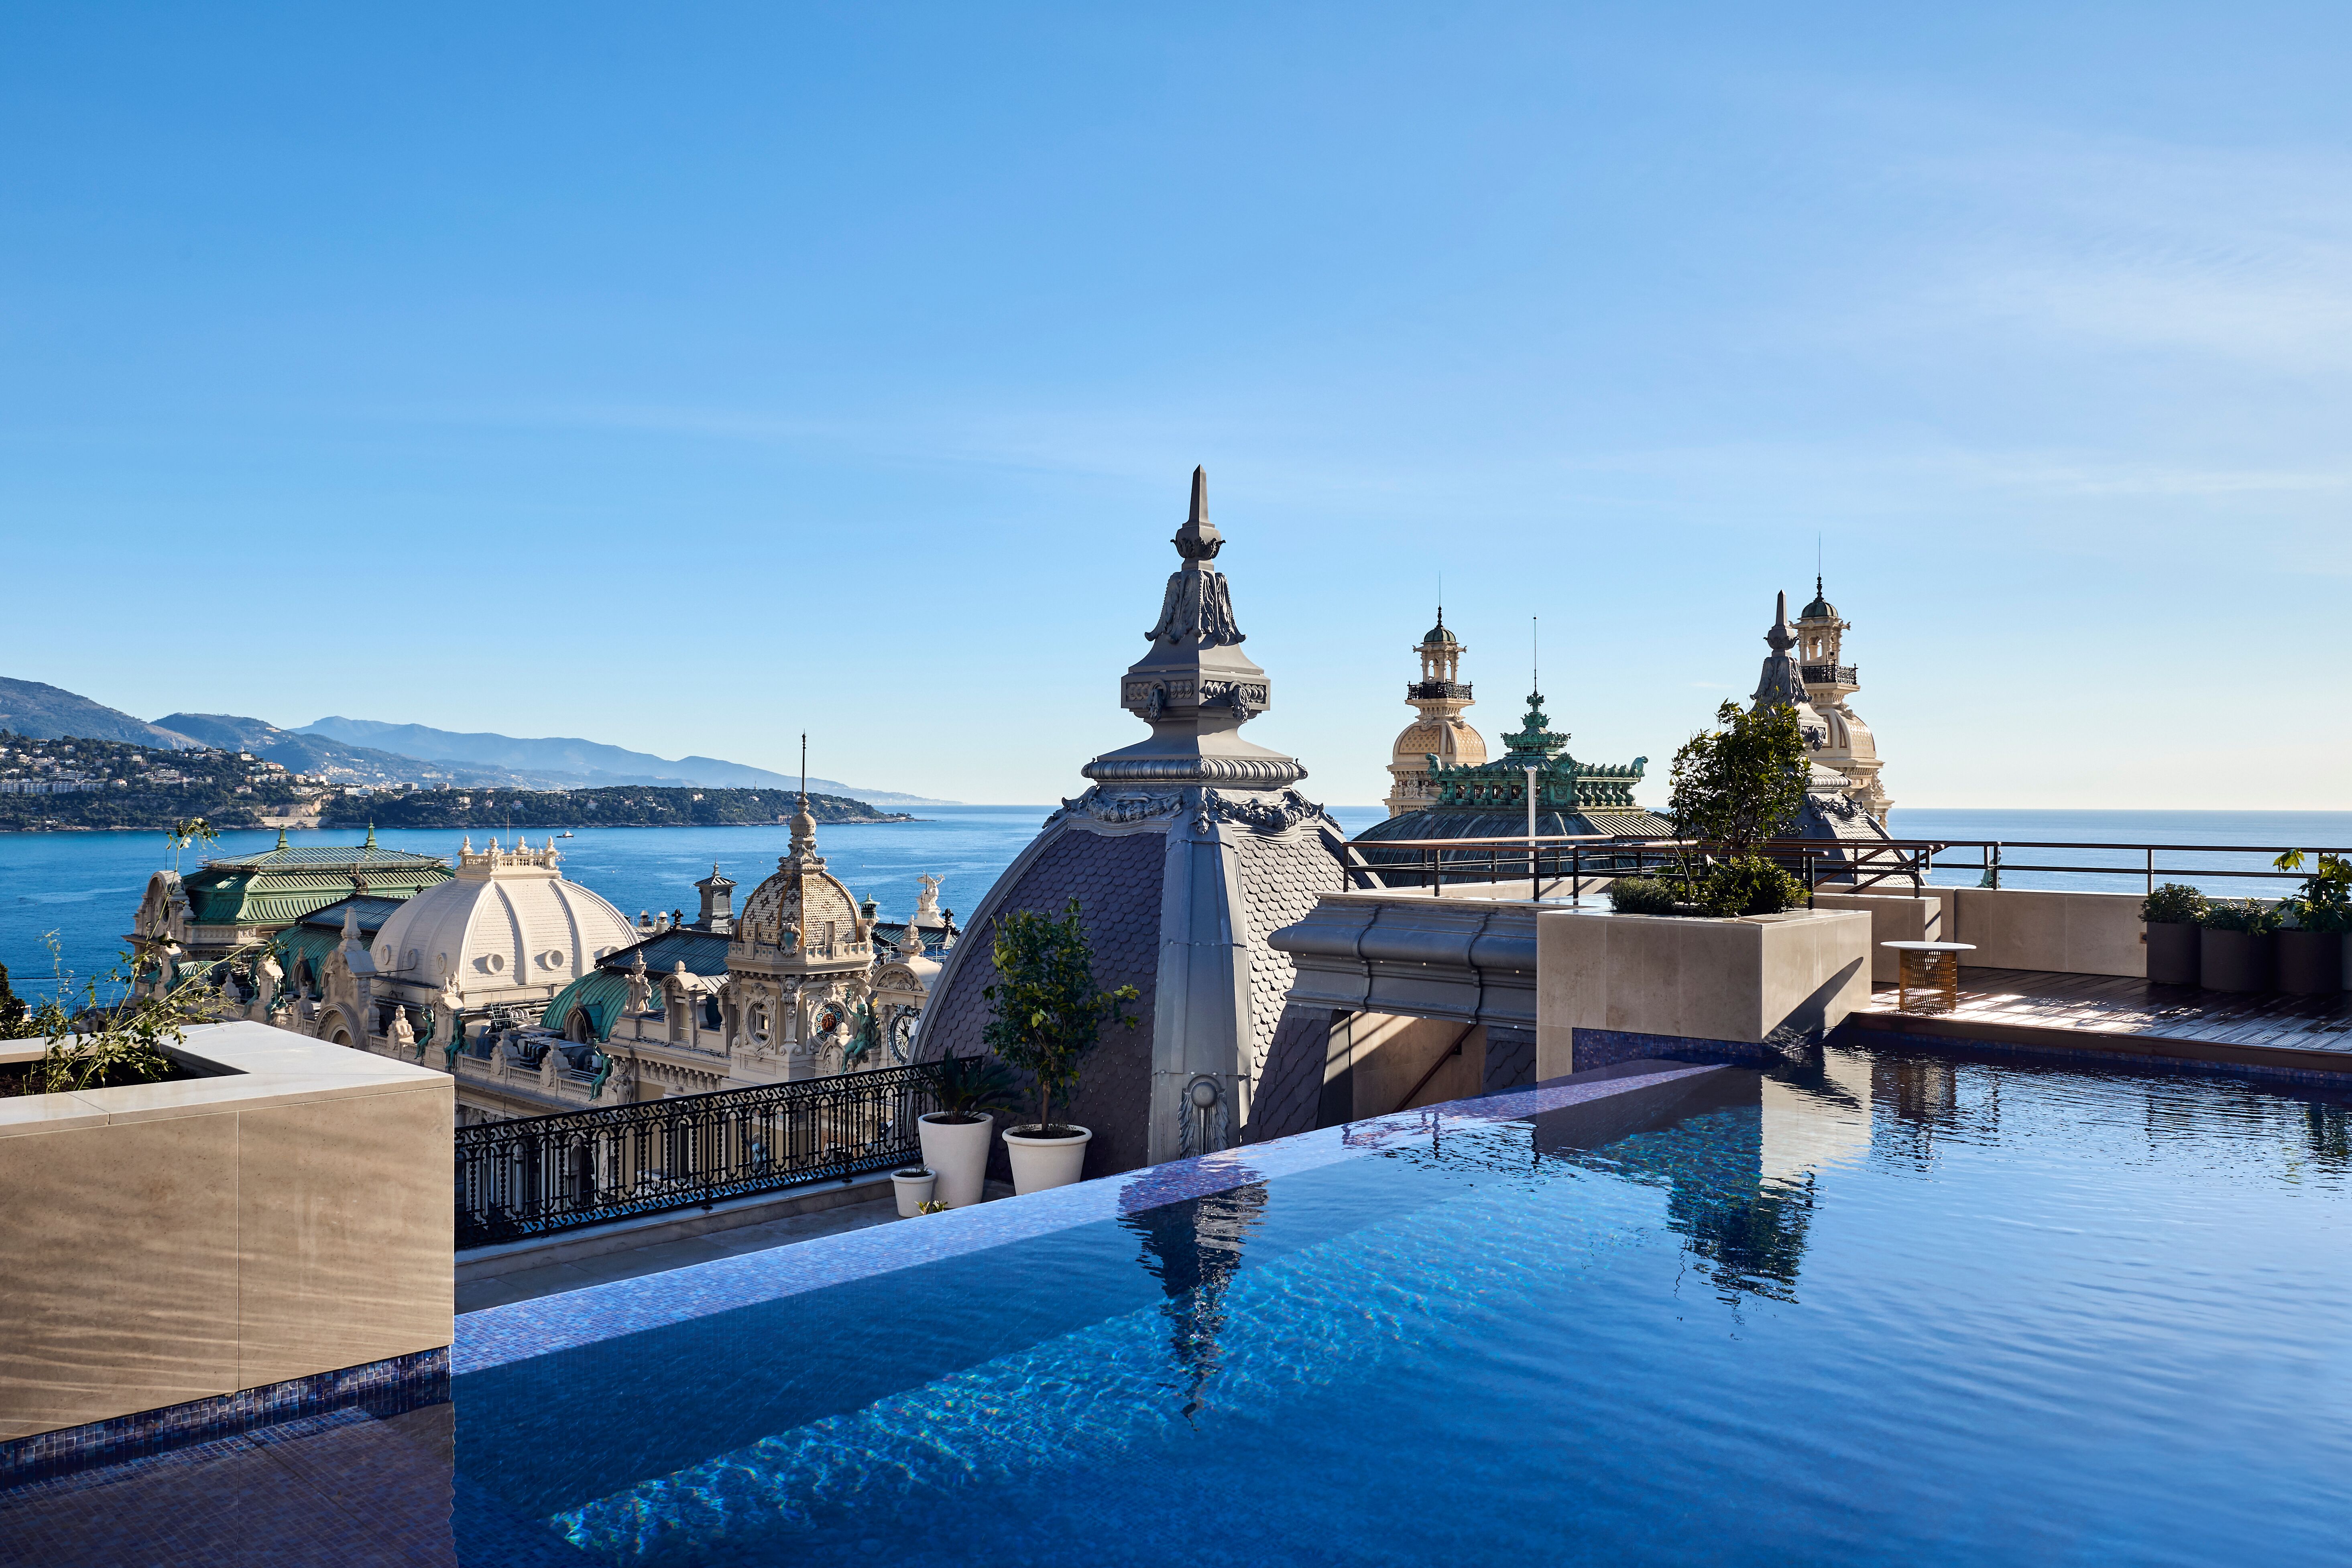 Prince Rainier Suite, Hotel Paris Monte Carlo, Monaco